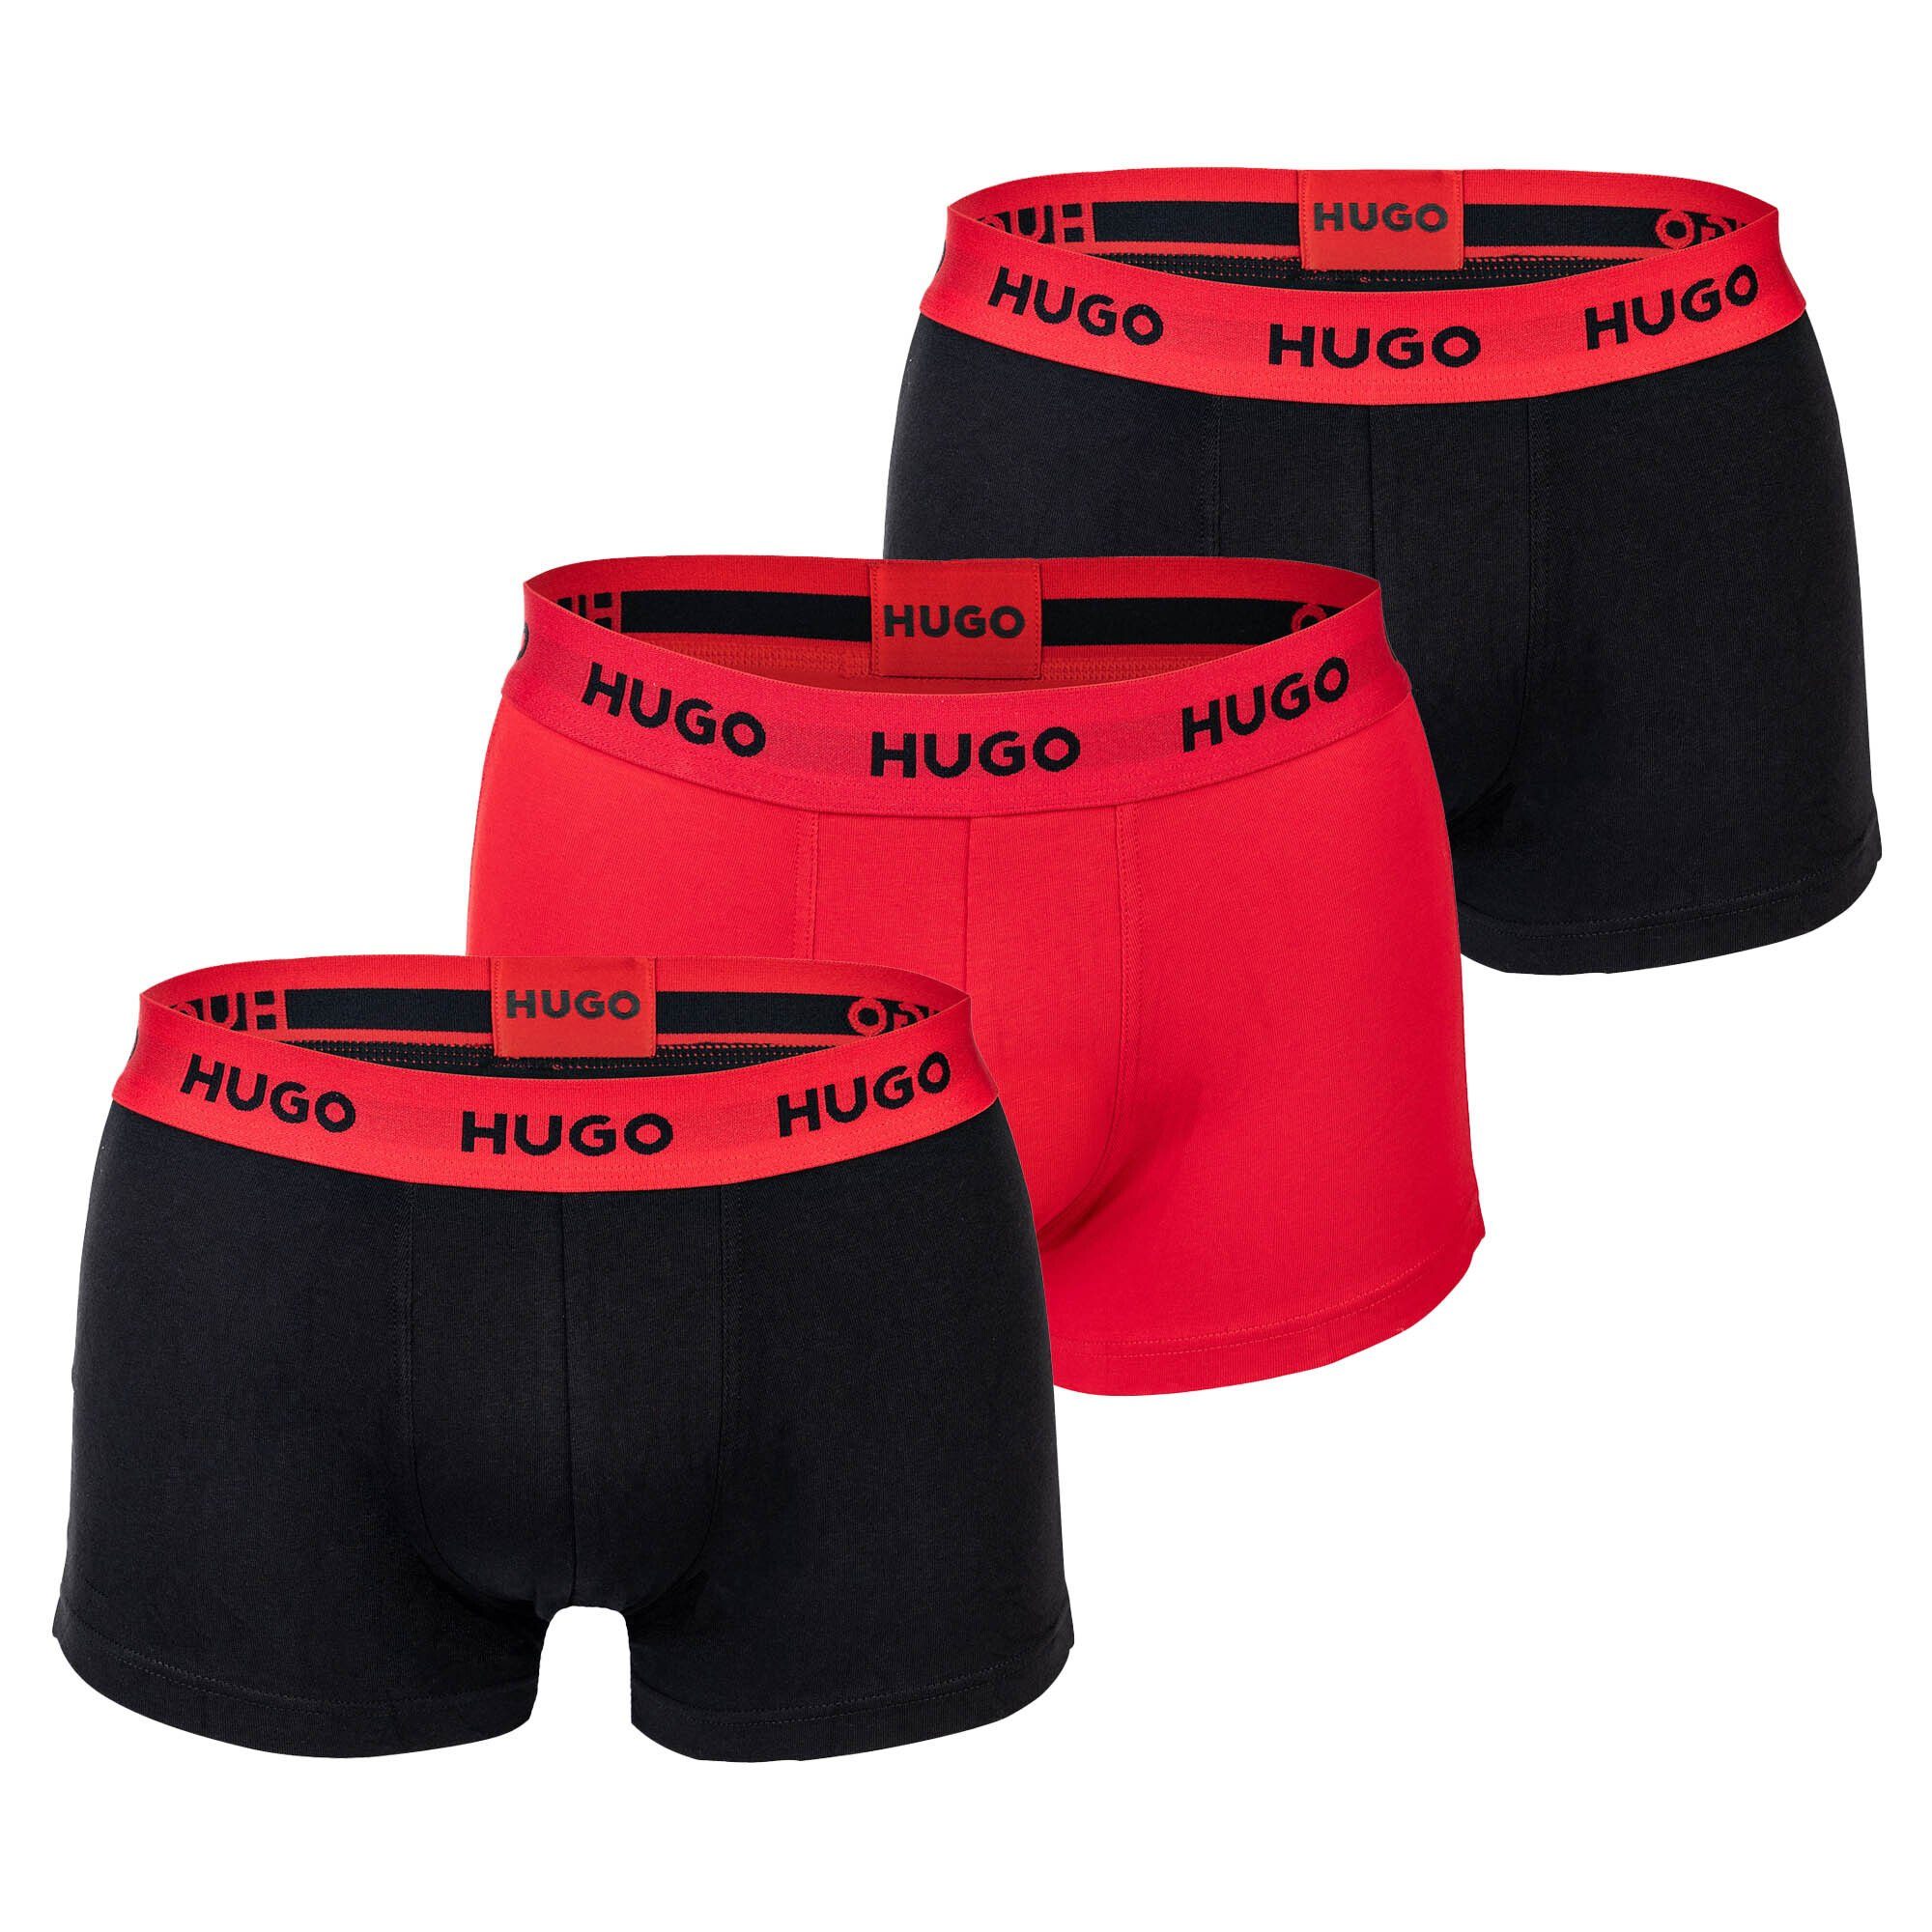 HUGO Boxer Herren Boxer Shorts, 3er Pack - Trunks Triplet Schwarz/Rot/Schwarz